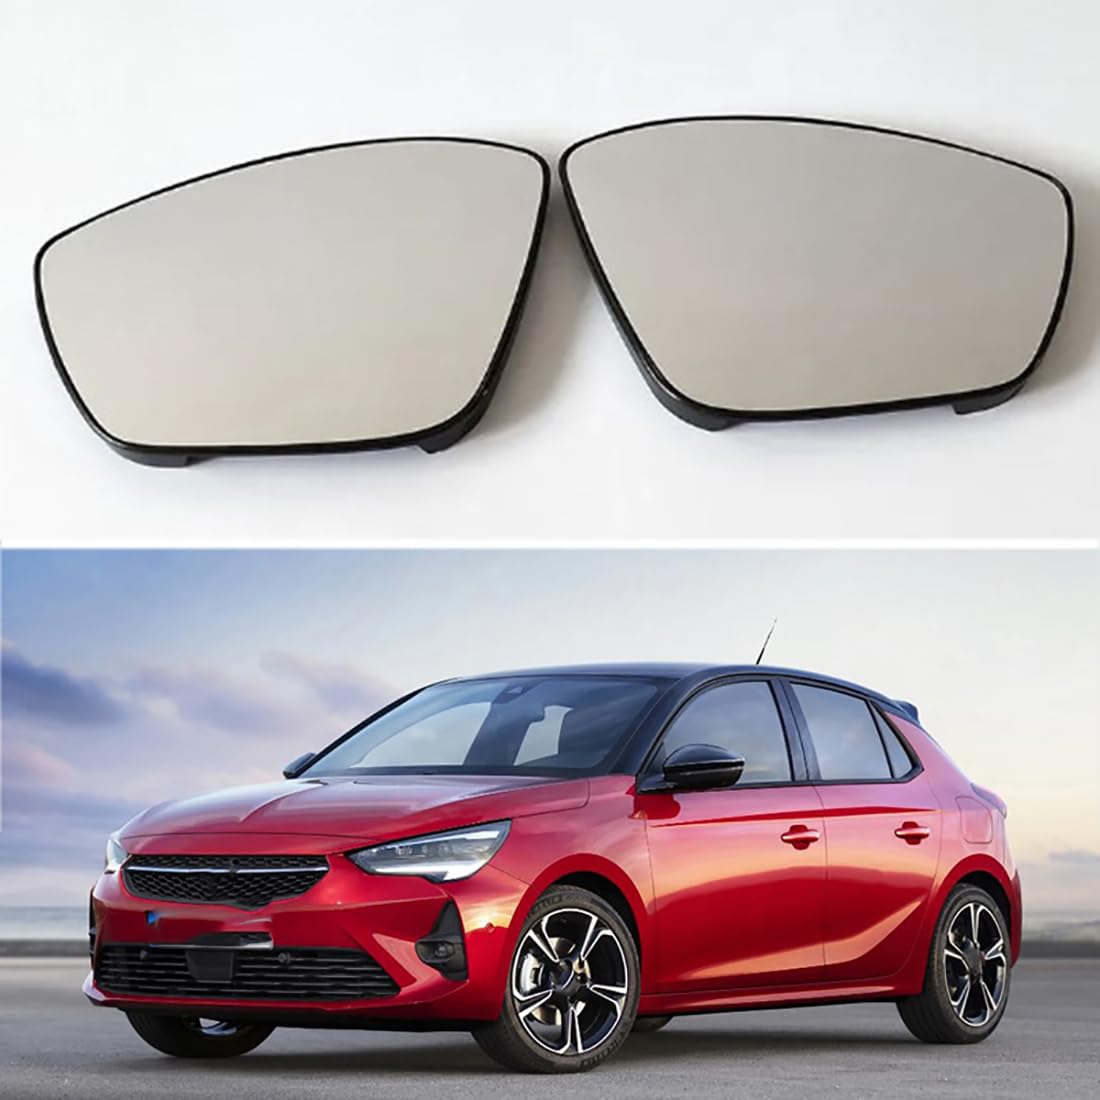 Austauschbarer Auto-Außenspiegel aus Beheizbarem Glas für Opel Corsa F 2019-2023,beheizbarer Rückspiegel für Fahrer und Beifahrer Links/rechts,C-right and left von YujieNB